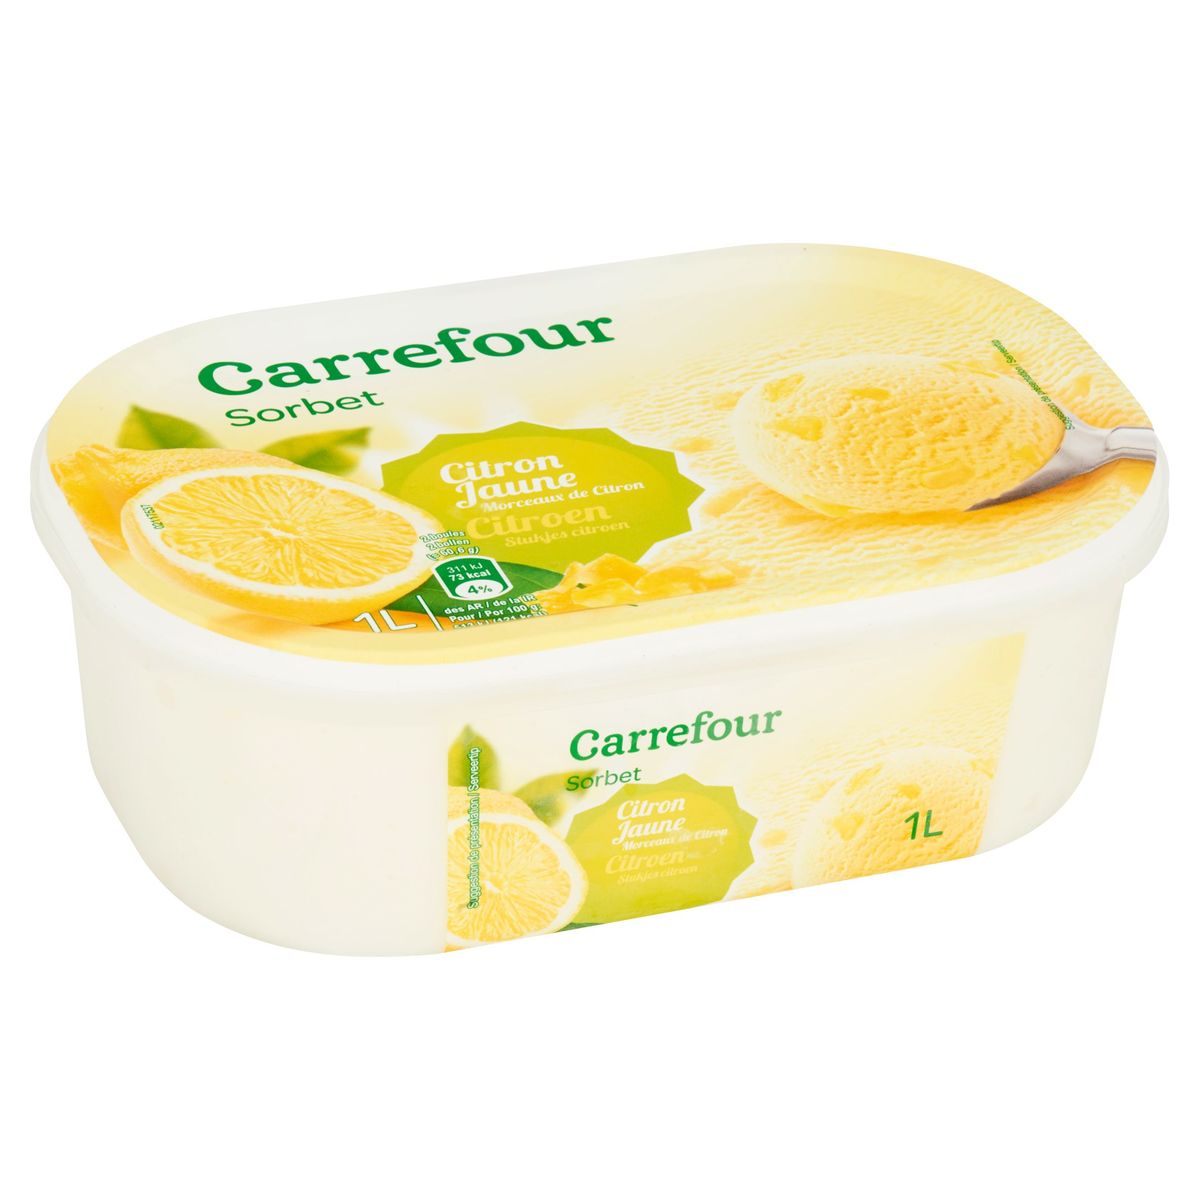 Carrefour Sorbet Citron Jaune Morceaux de Citron 1L